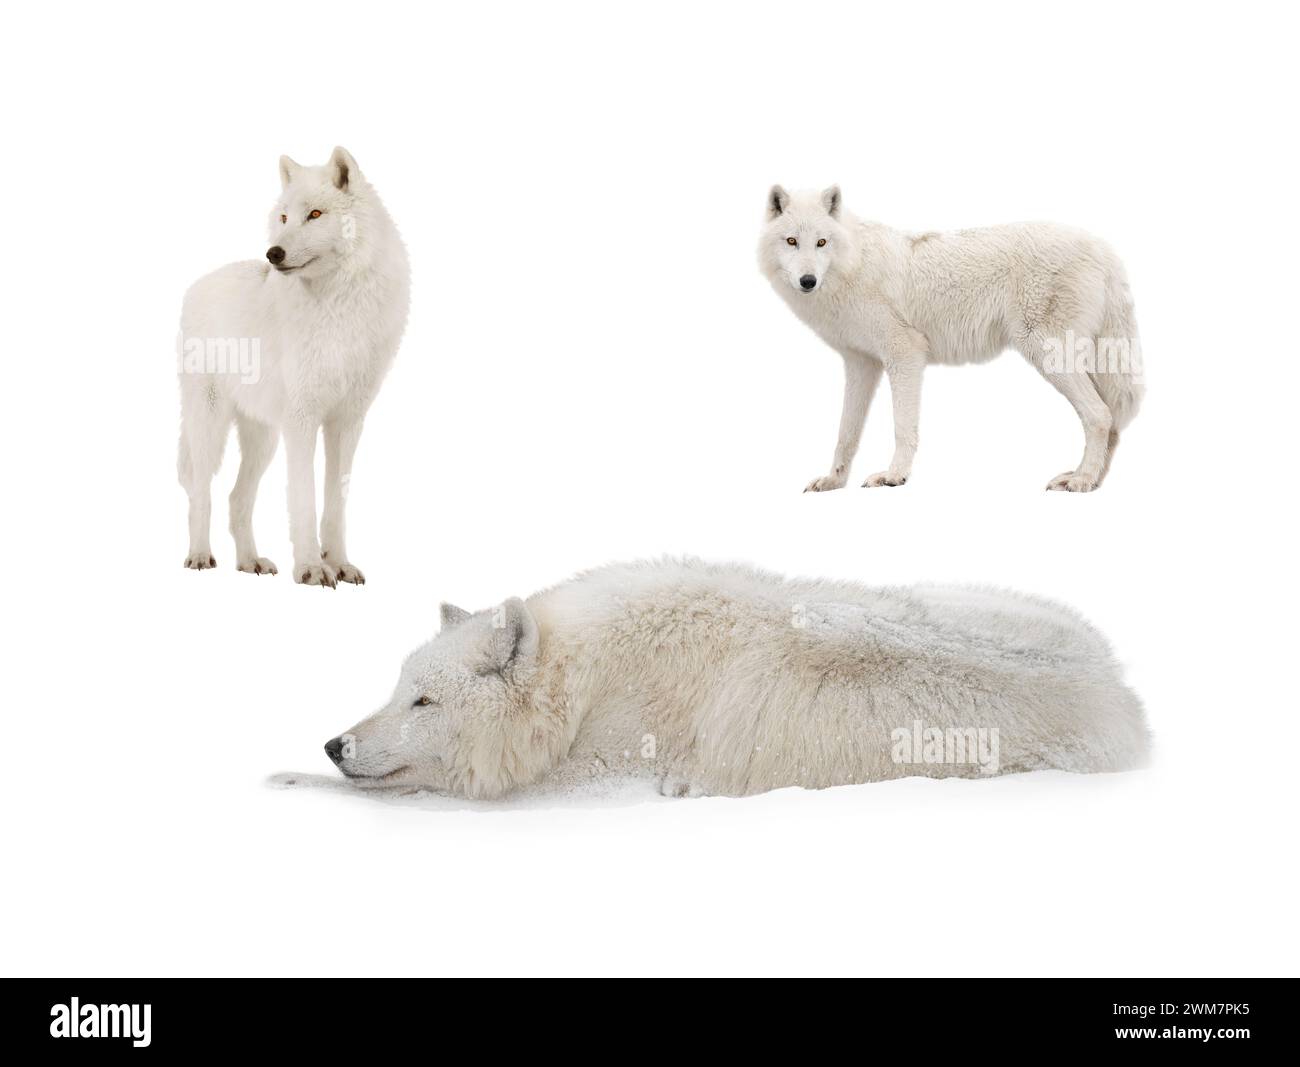 Un loup blanc arctique repose dans la neige pendant les chutes de neige. Isolé sur fond blanc. Banque D'Images